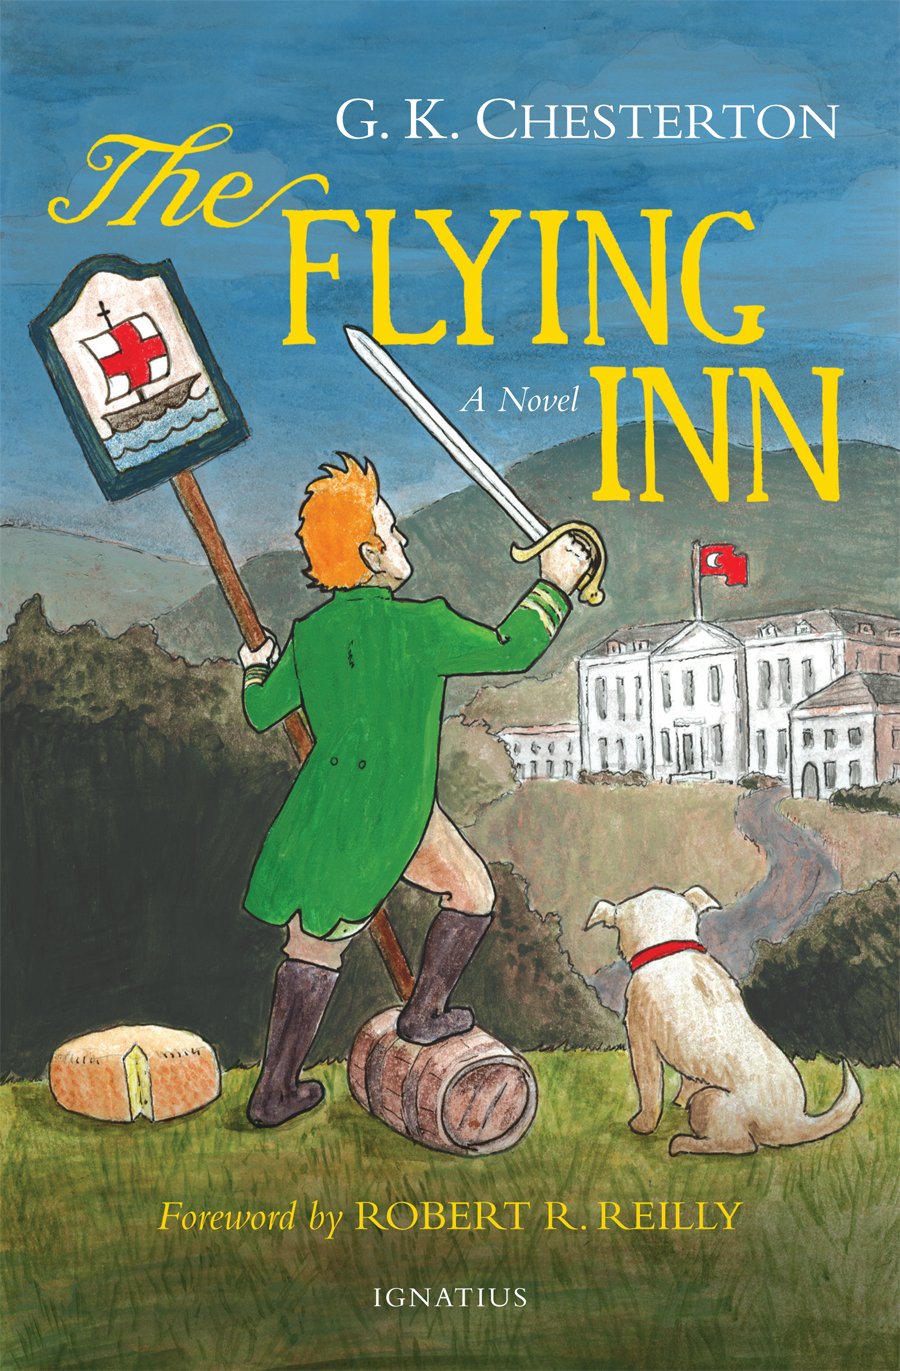 Flying Inn (Chesterton - Ignatius ed.)